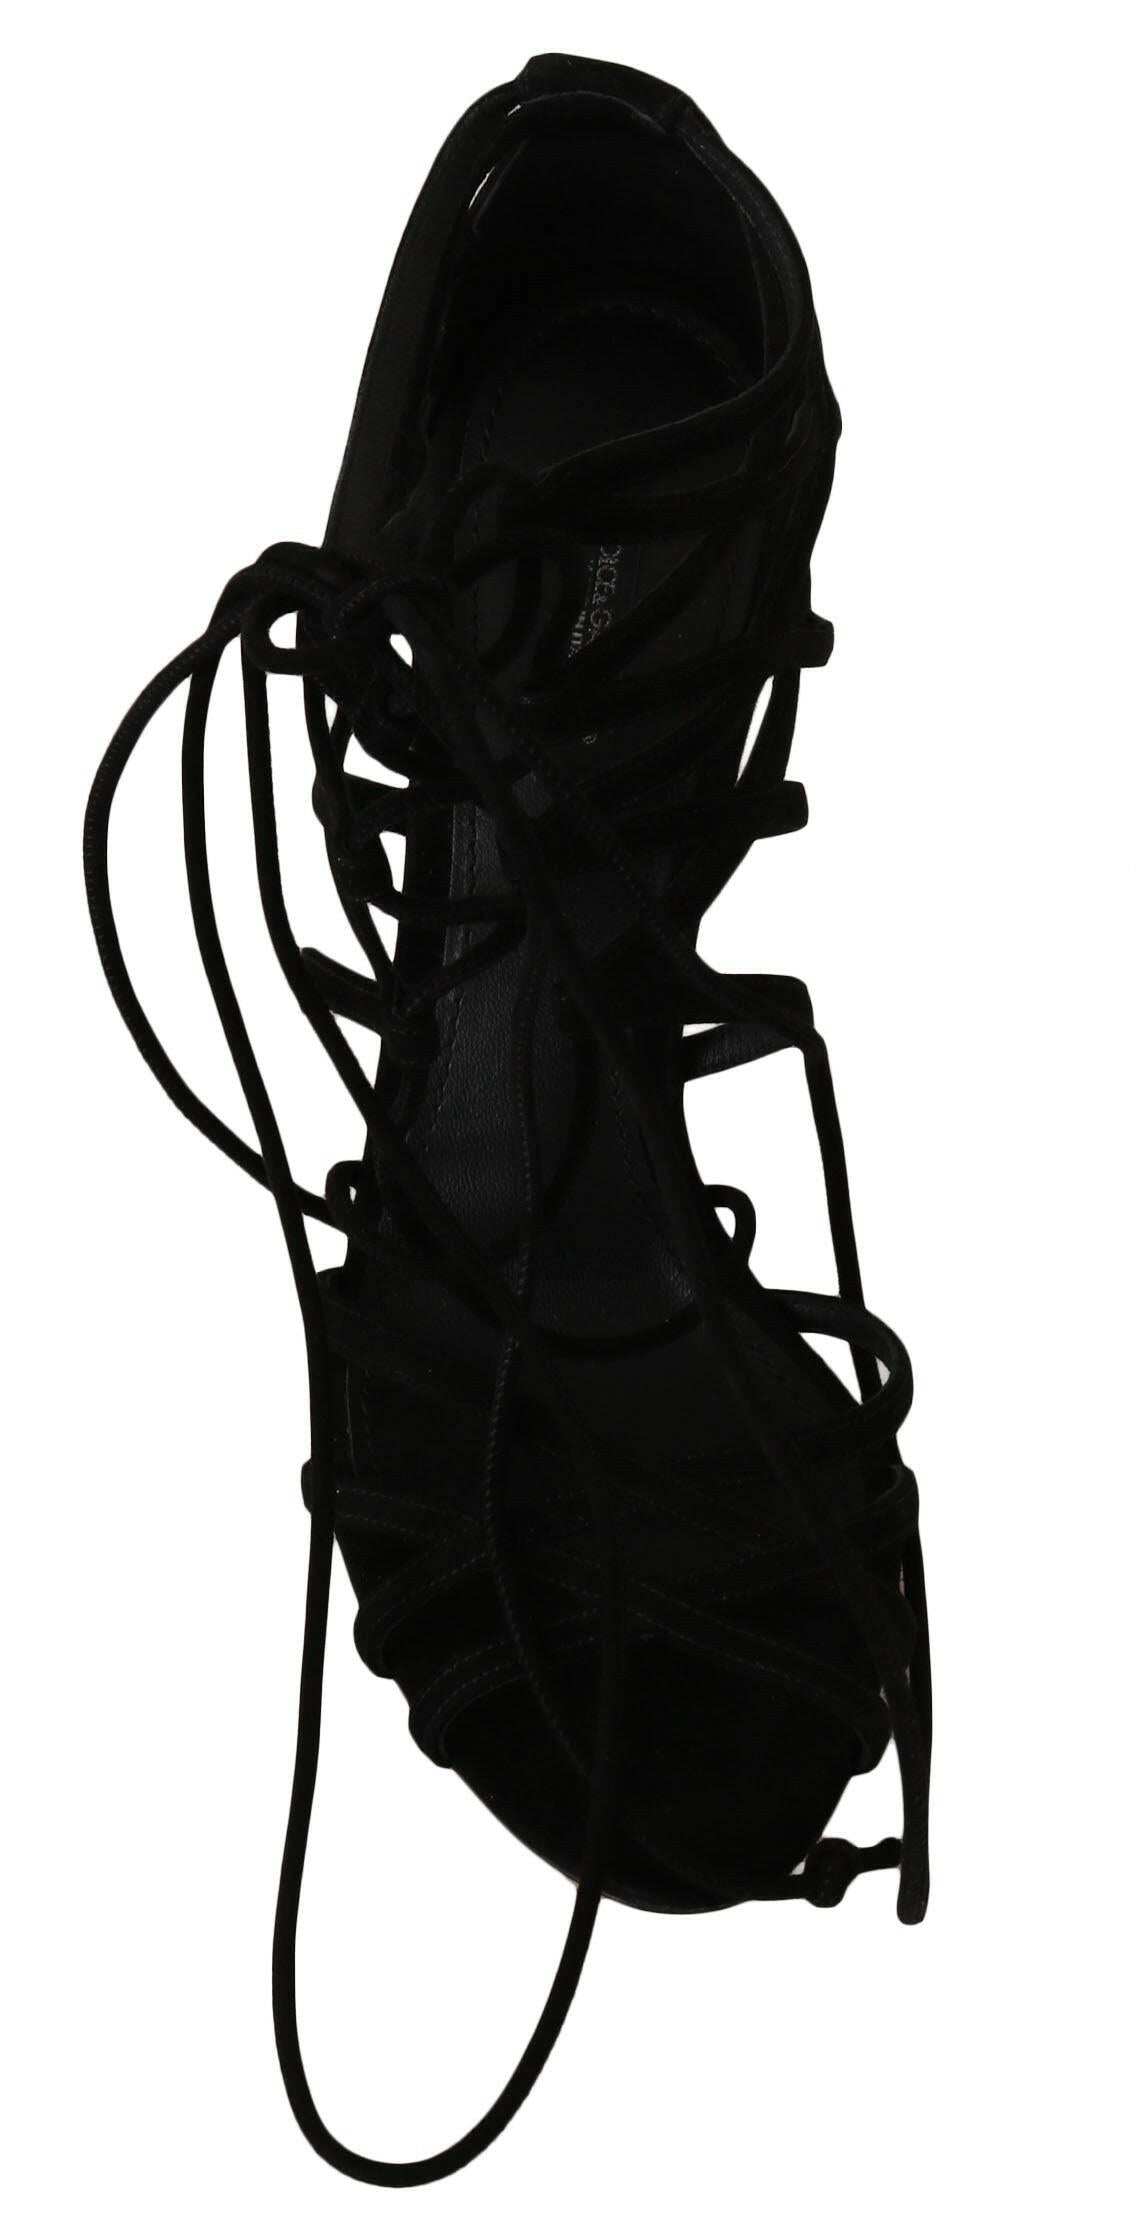 Dolce & Gabbana Black Suede Strap Stilettos Sandals - GENUINE AUTHENTIC BRAND LLC  